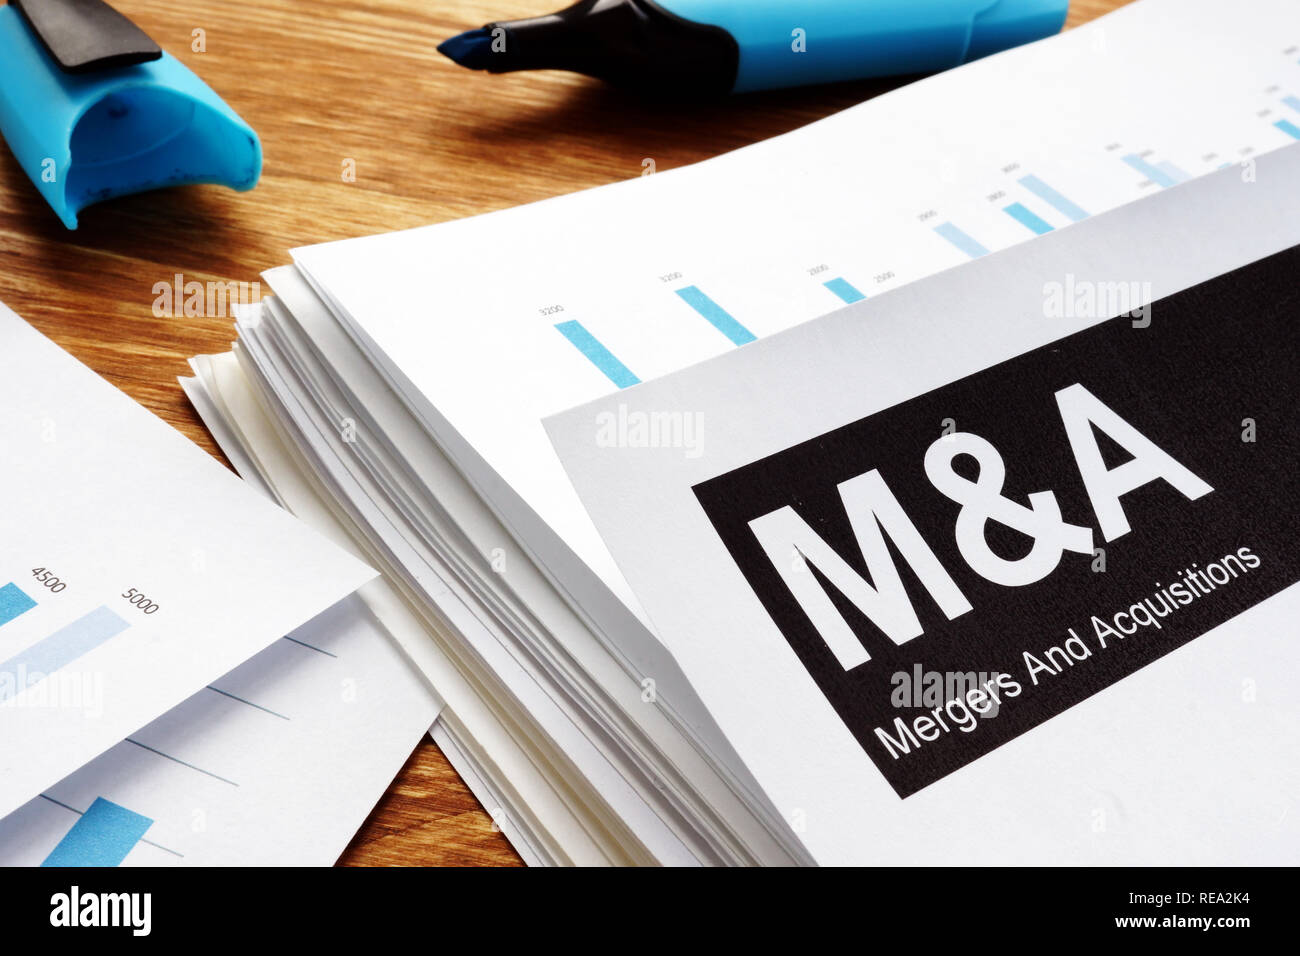 Documentos sobre fusiones y adquisiciones m&r con un lápiz. Foto de stock